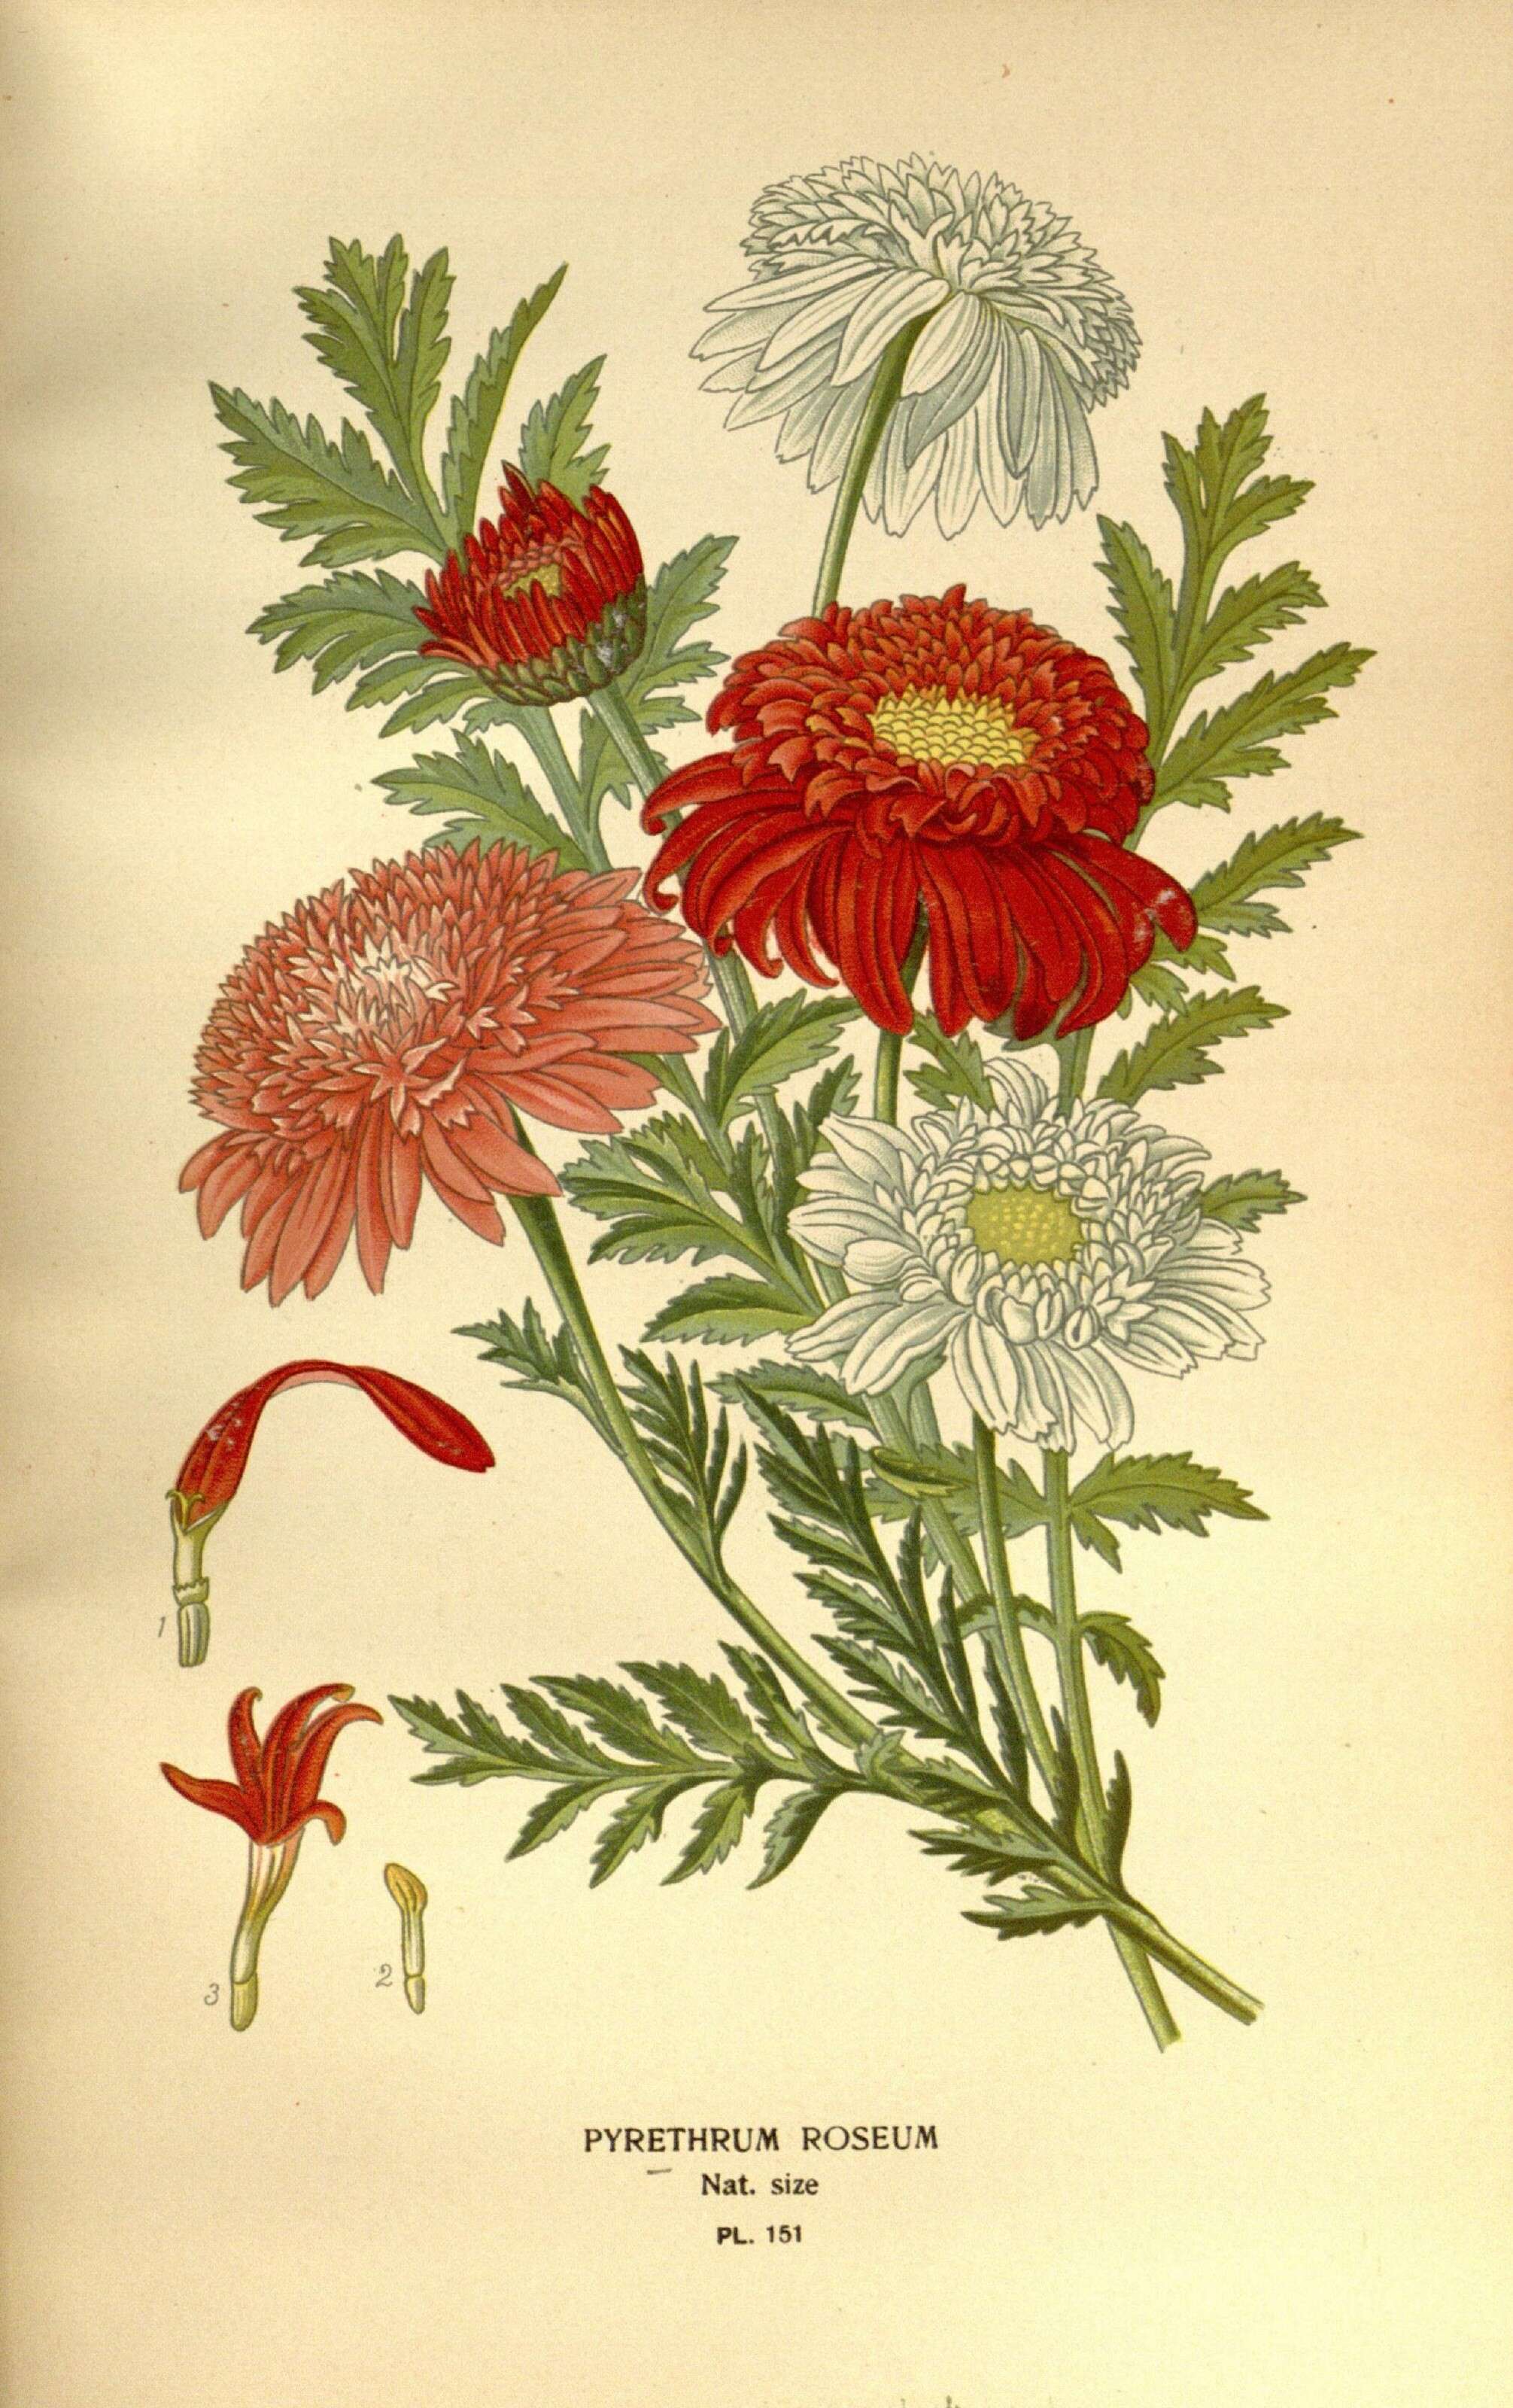 Image of pyrethum daisy